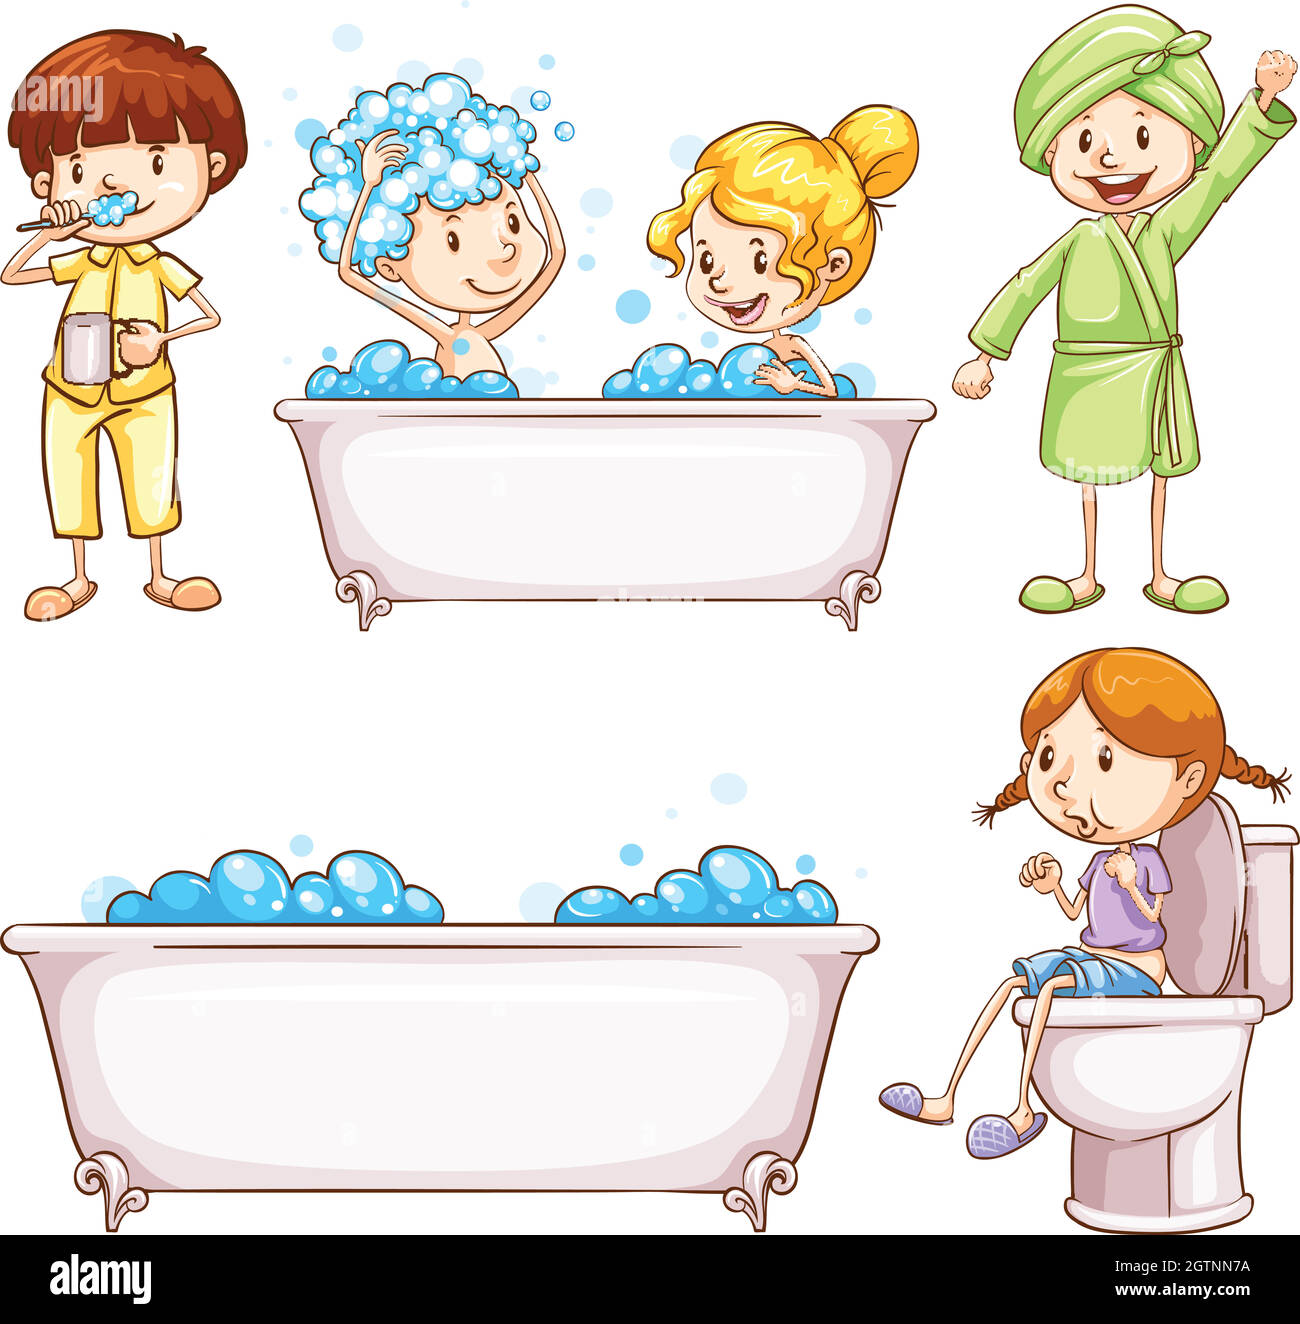 Relativo Típico Fantasía Baño de burbujas para niños Imágenes vectoriales de stock - Alamy